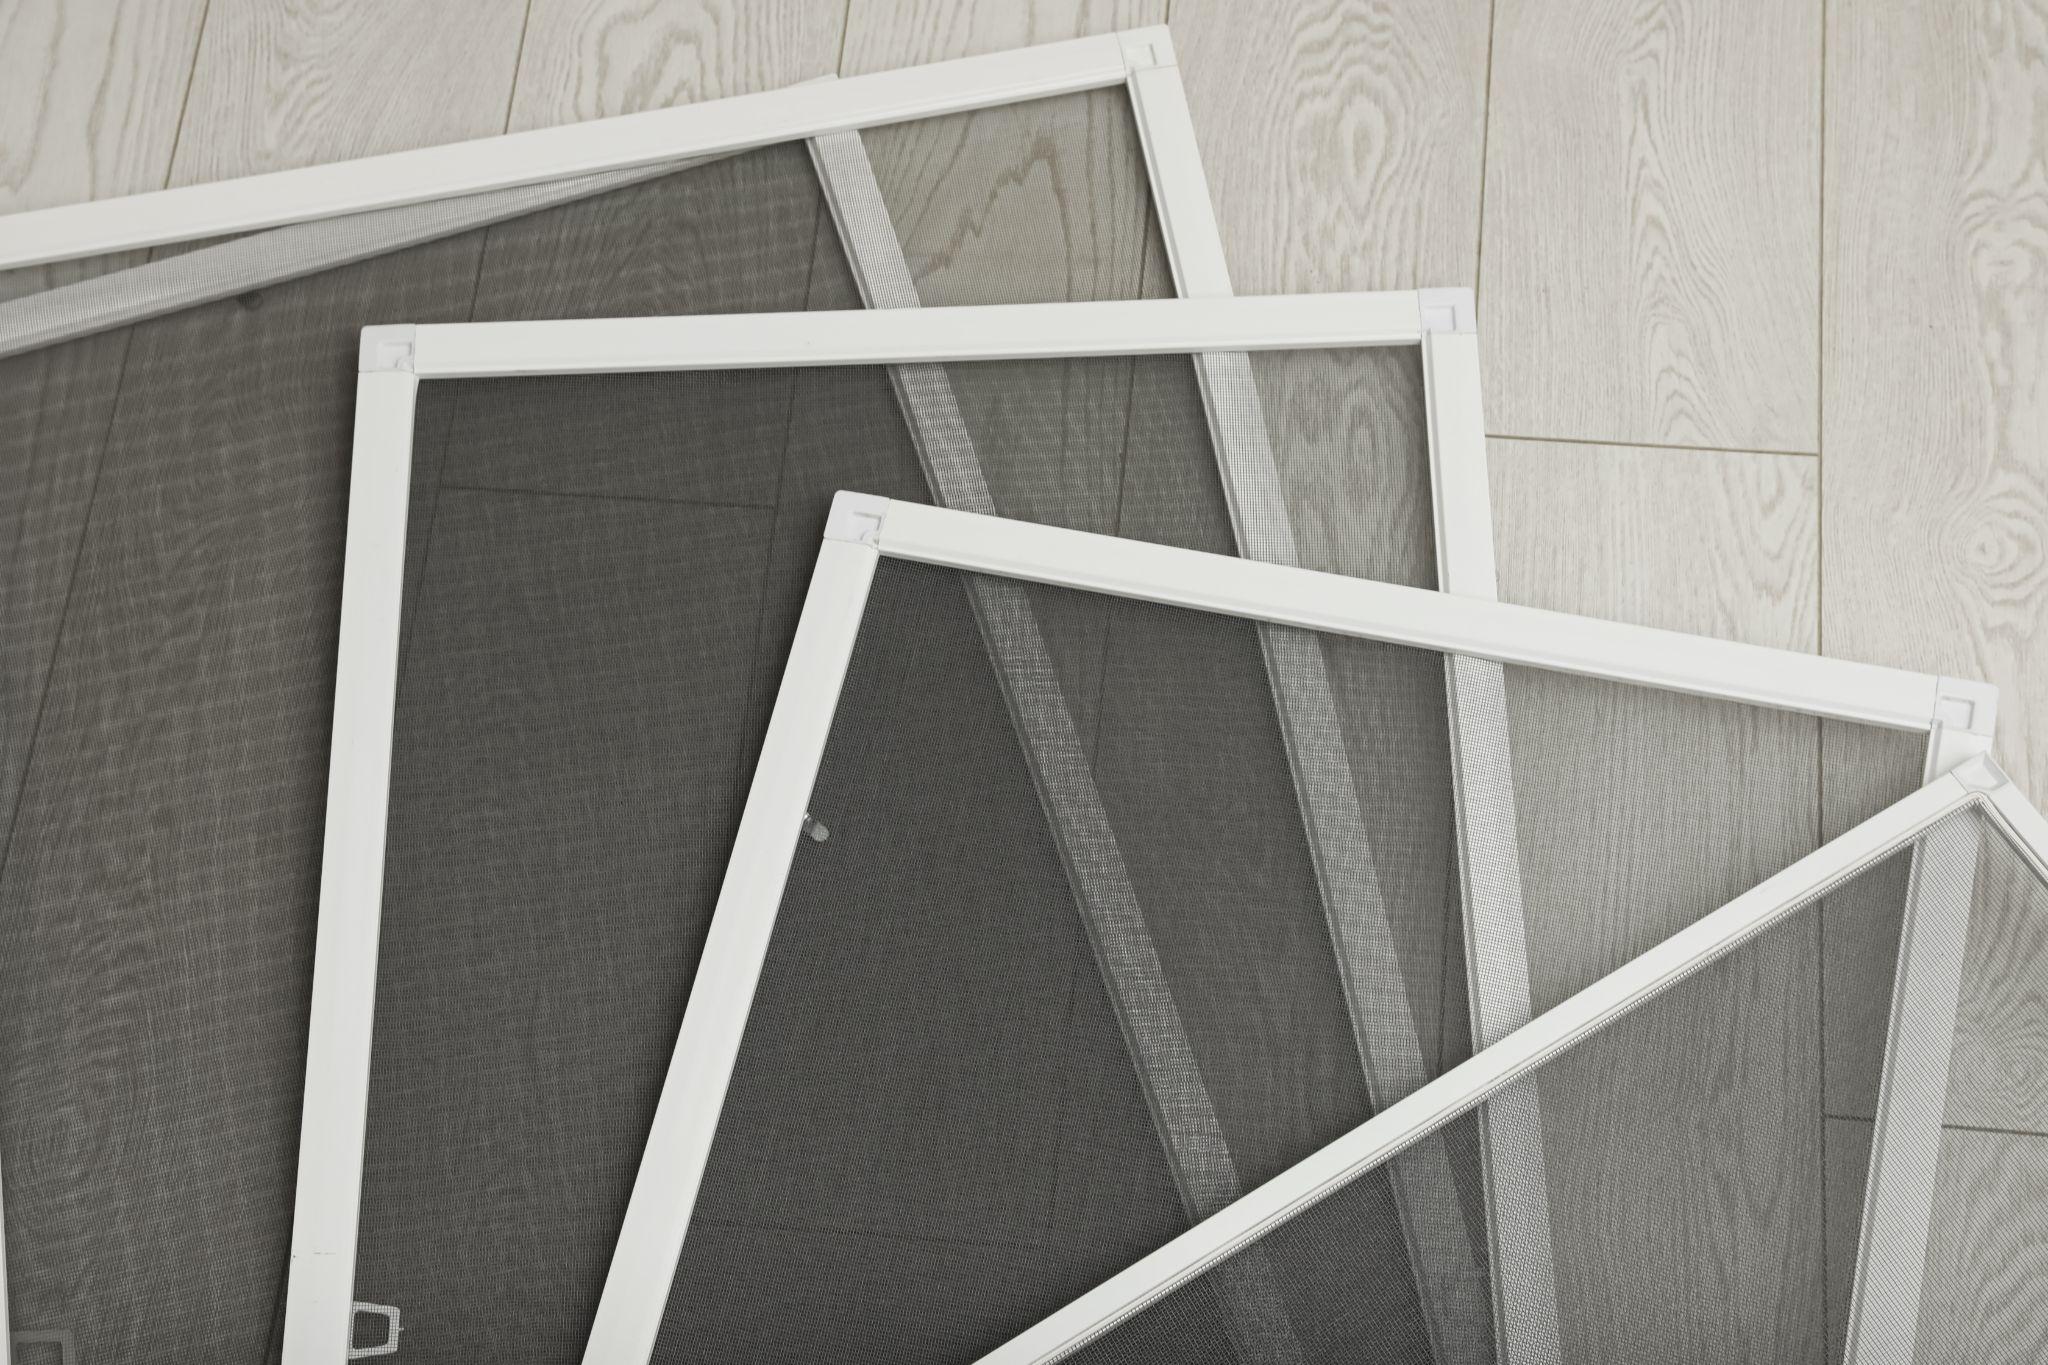 Set of window screens on wooden floor